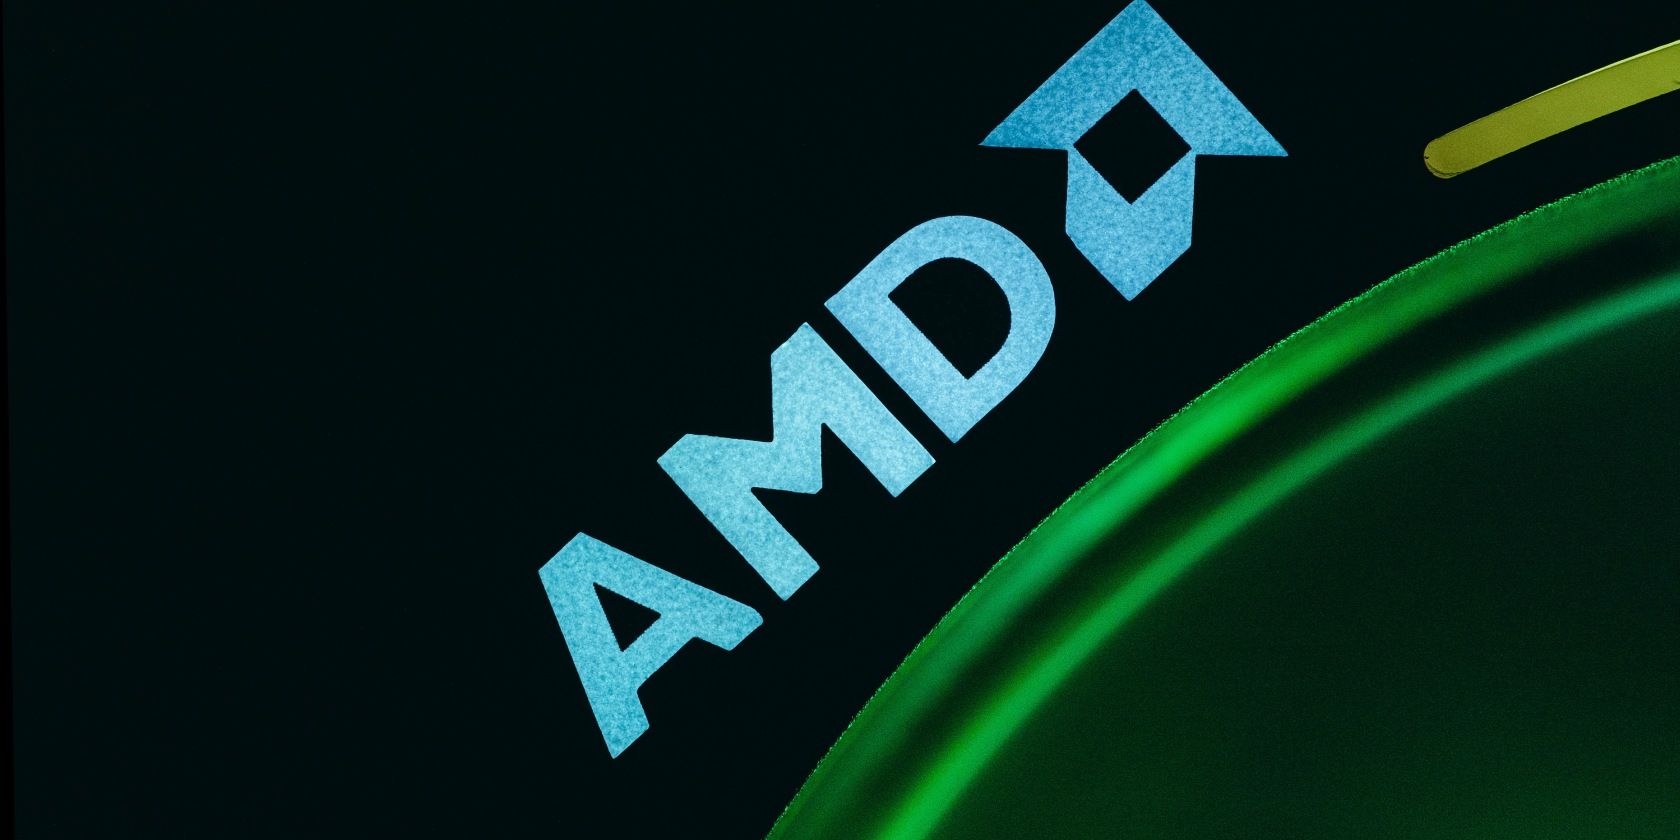 AMD Adrenaline software working on Windows install : r/SteamDeck